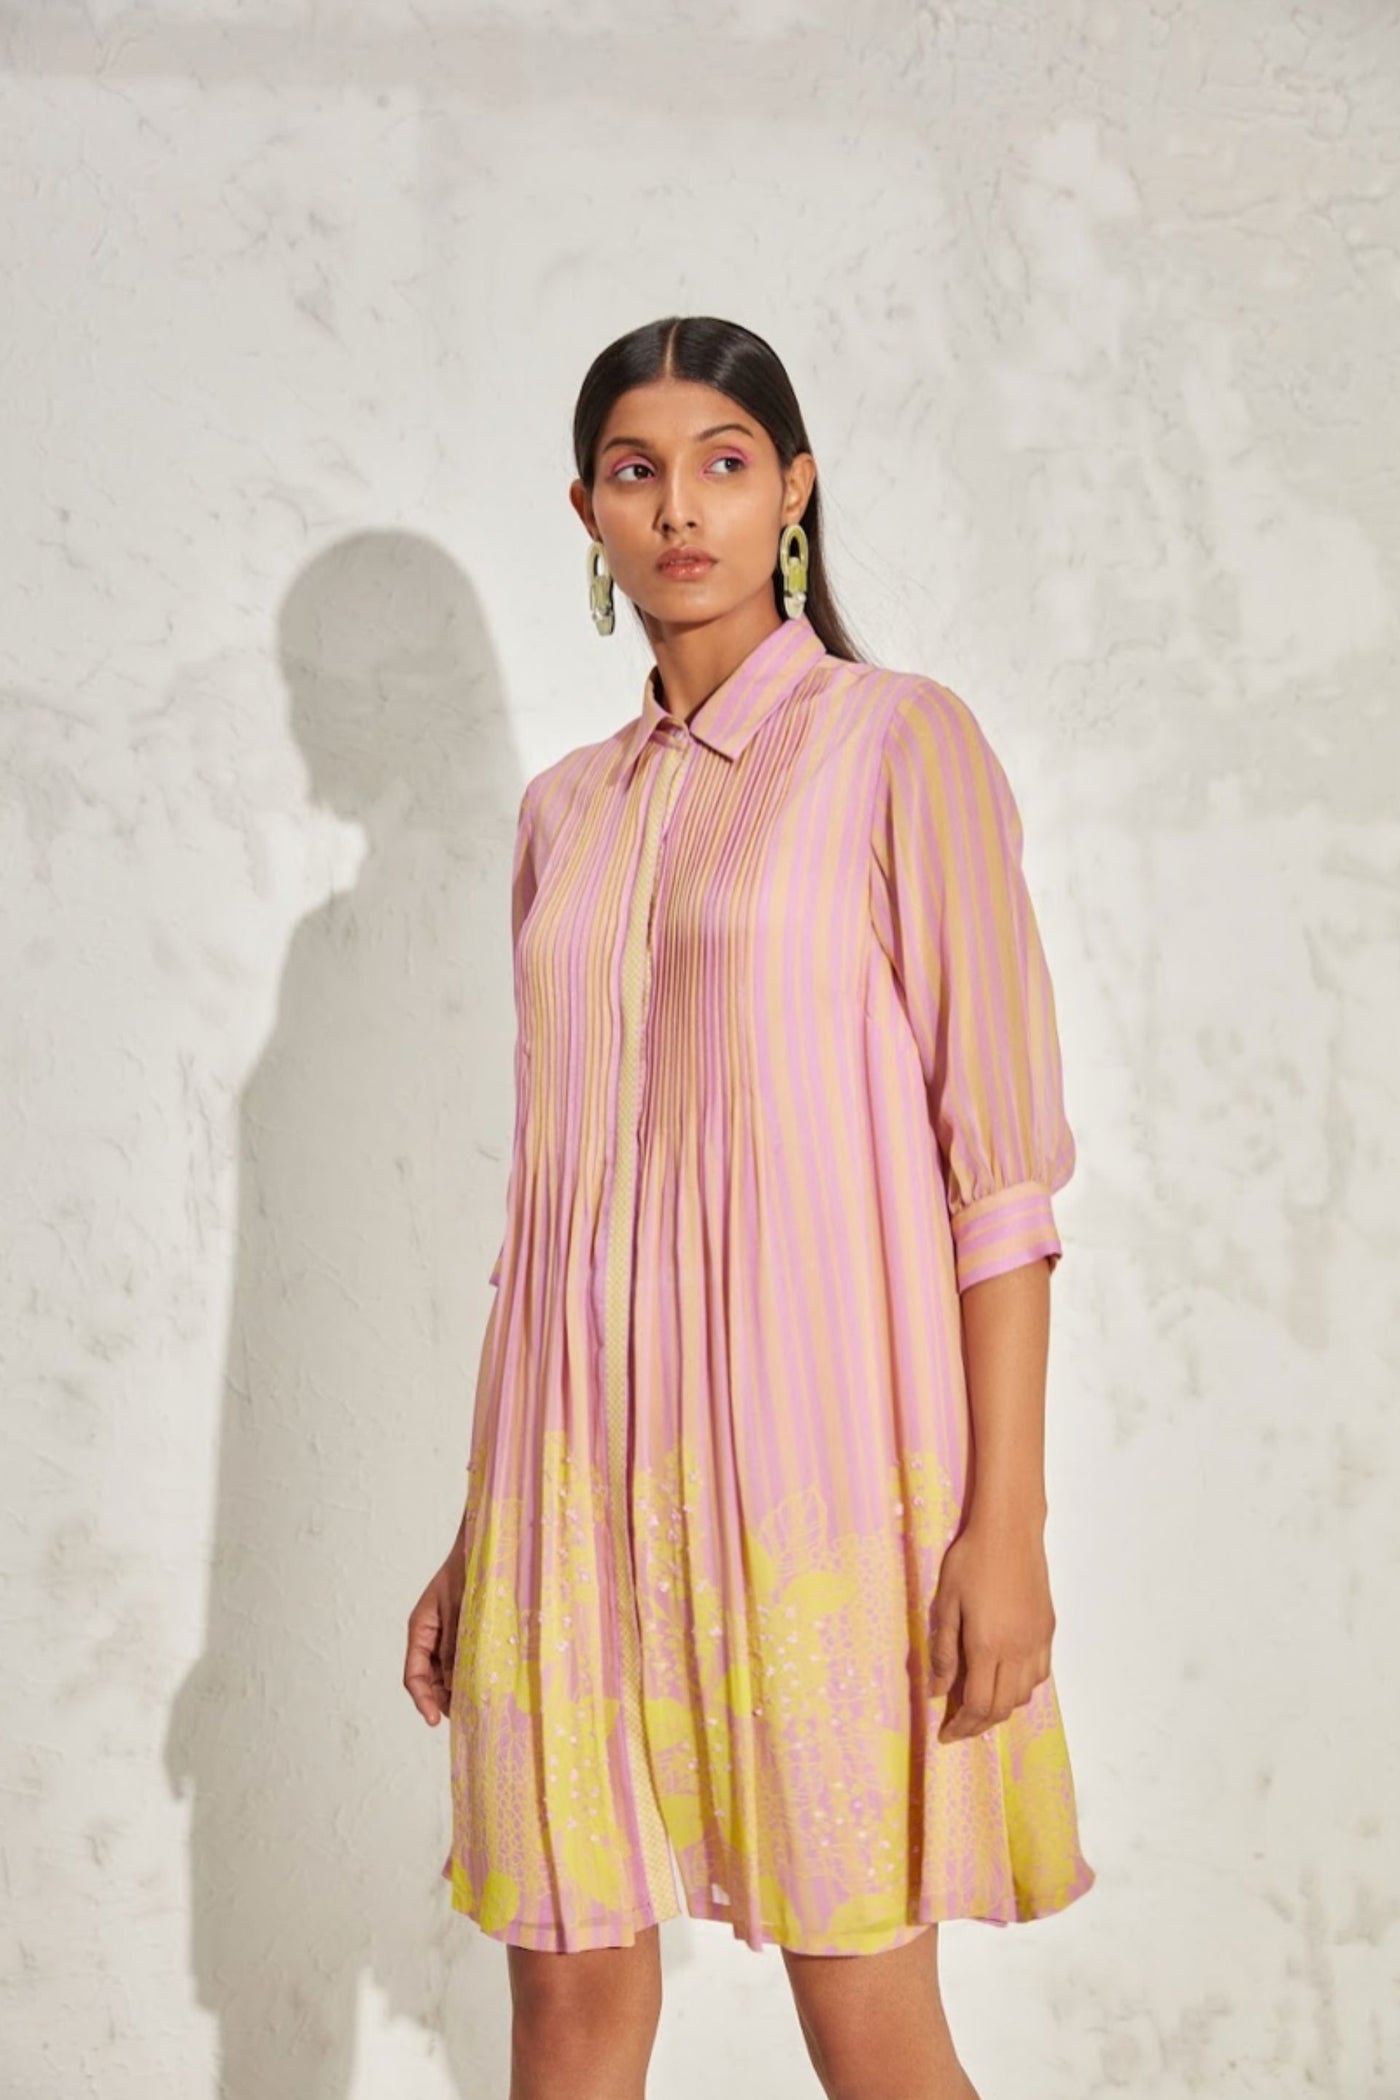 Namrata Joshipura Acadia Gathered Dress indian designer online shopping melange singapore